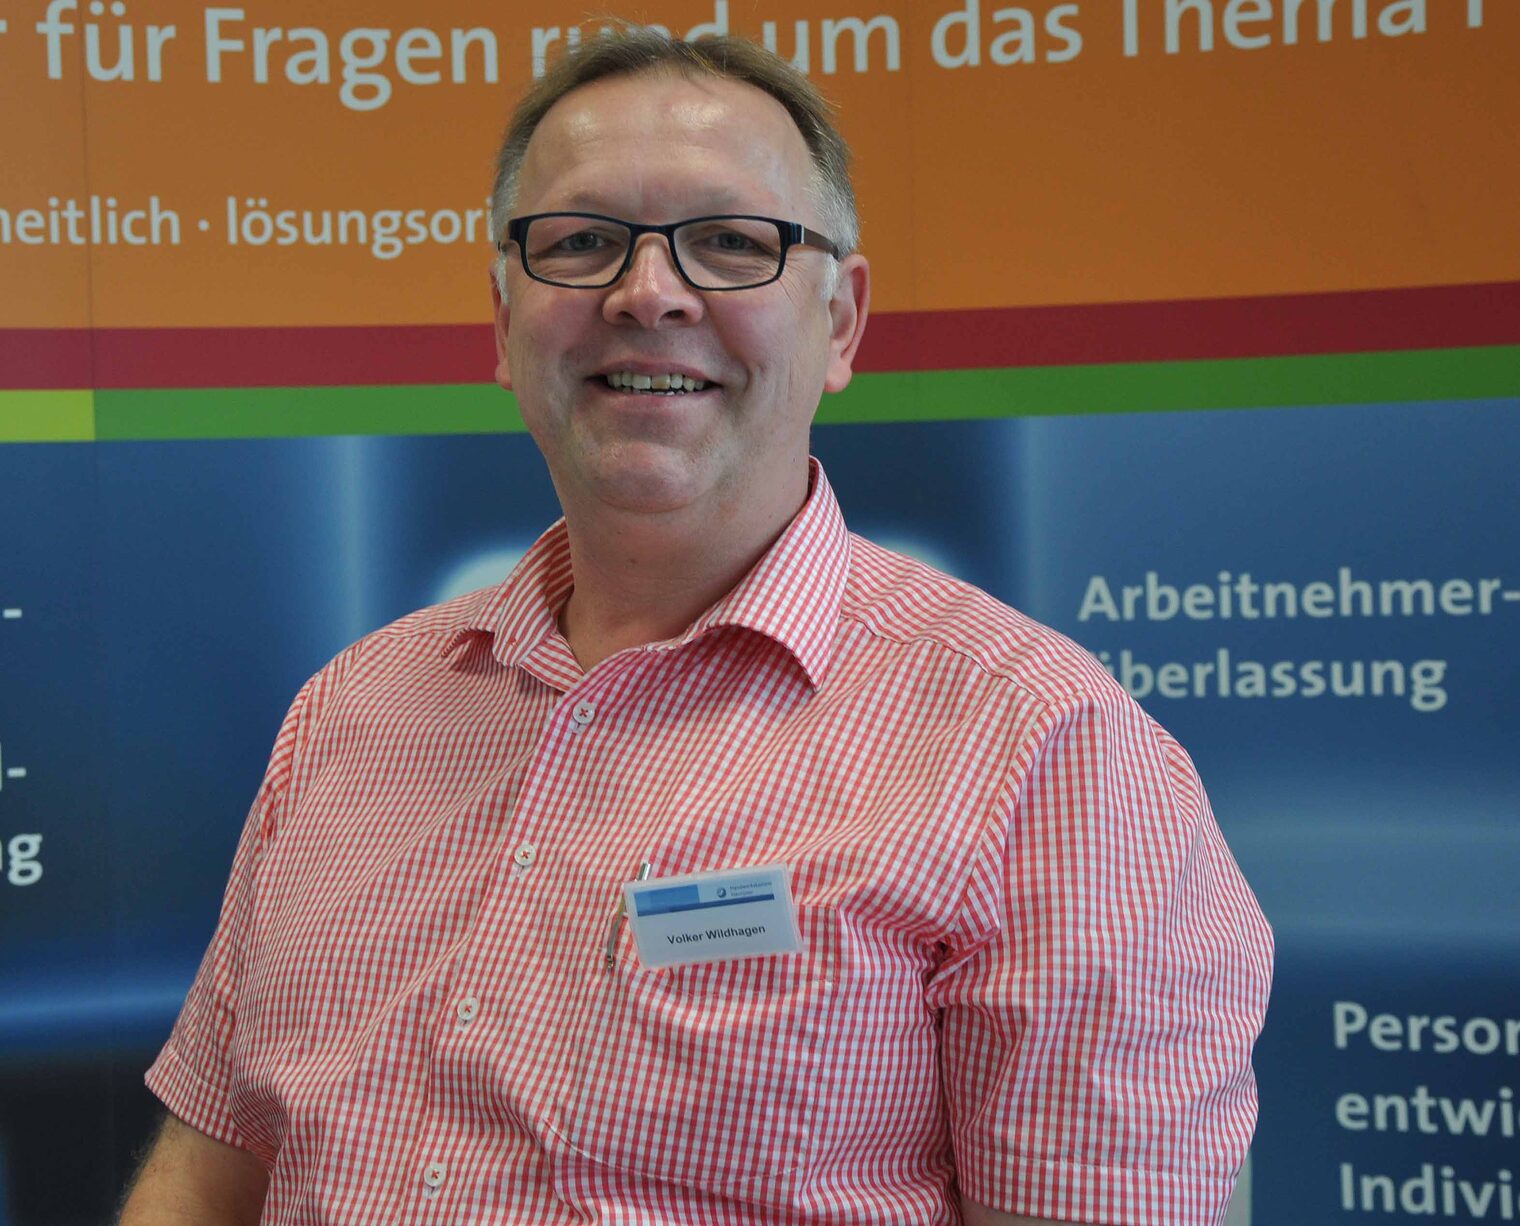 Volker Wildhagen, Mitglied im Qualifizierungsbeirat: "Gerade für die freien Werkstätten ist eine maßgeschneiderte Qualifizierung, wie sie das Kompetenzzentrum Kfz anbiett, absolut notwendig."